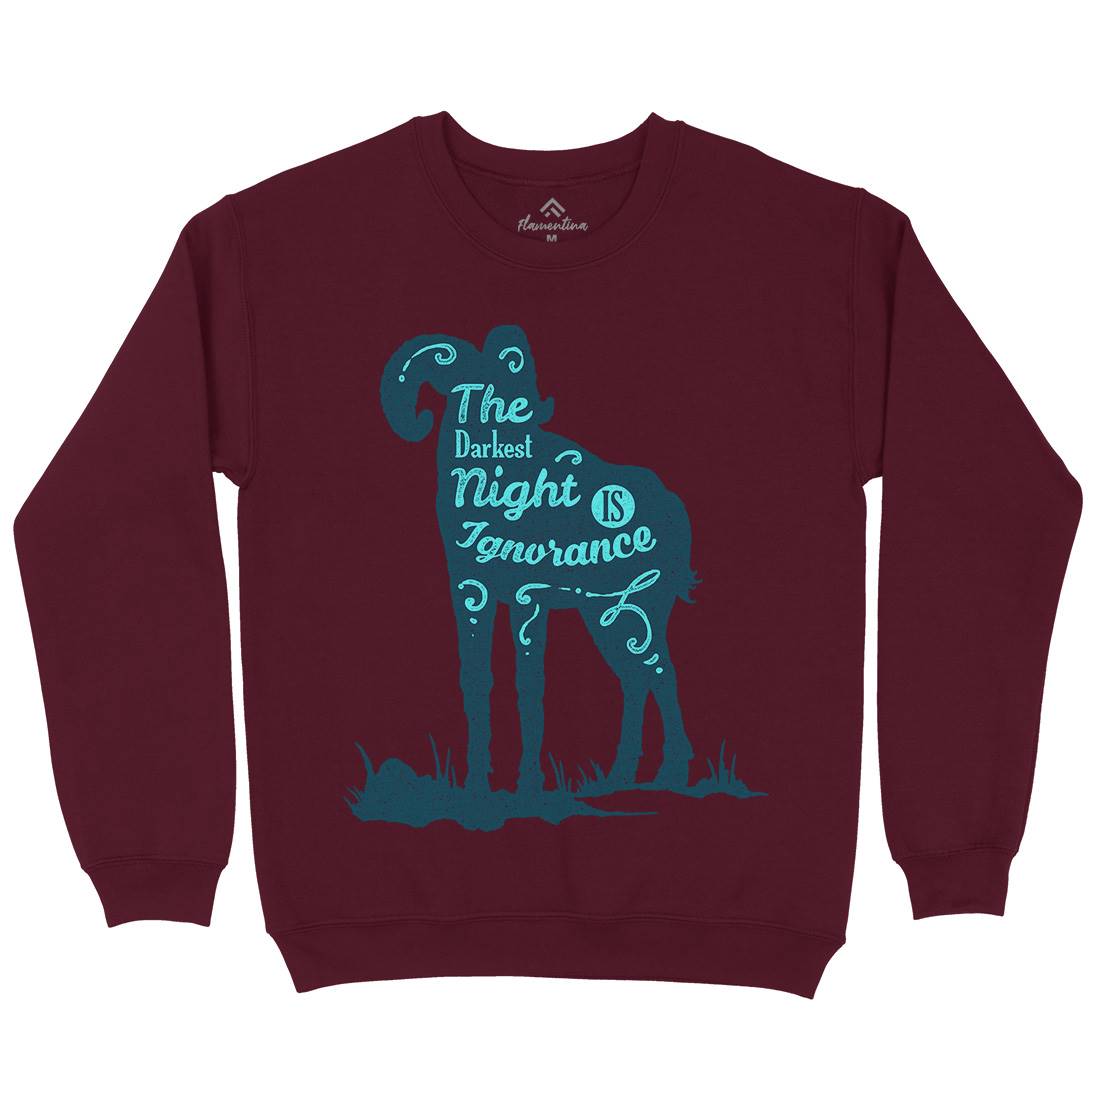 Darkest Night Kids Crew Neck Sweatshirt Quotes A377